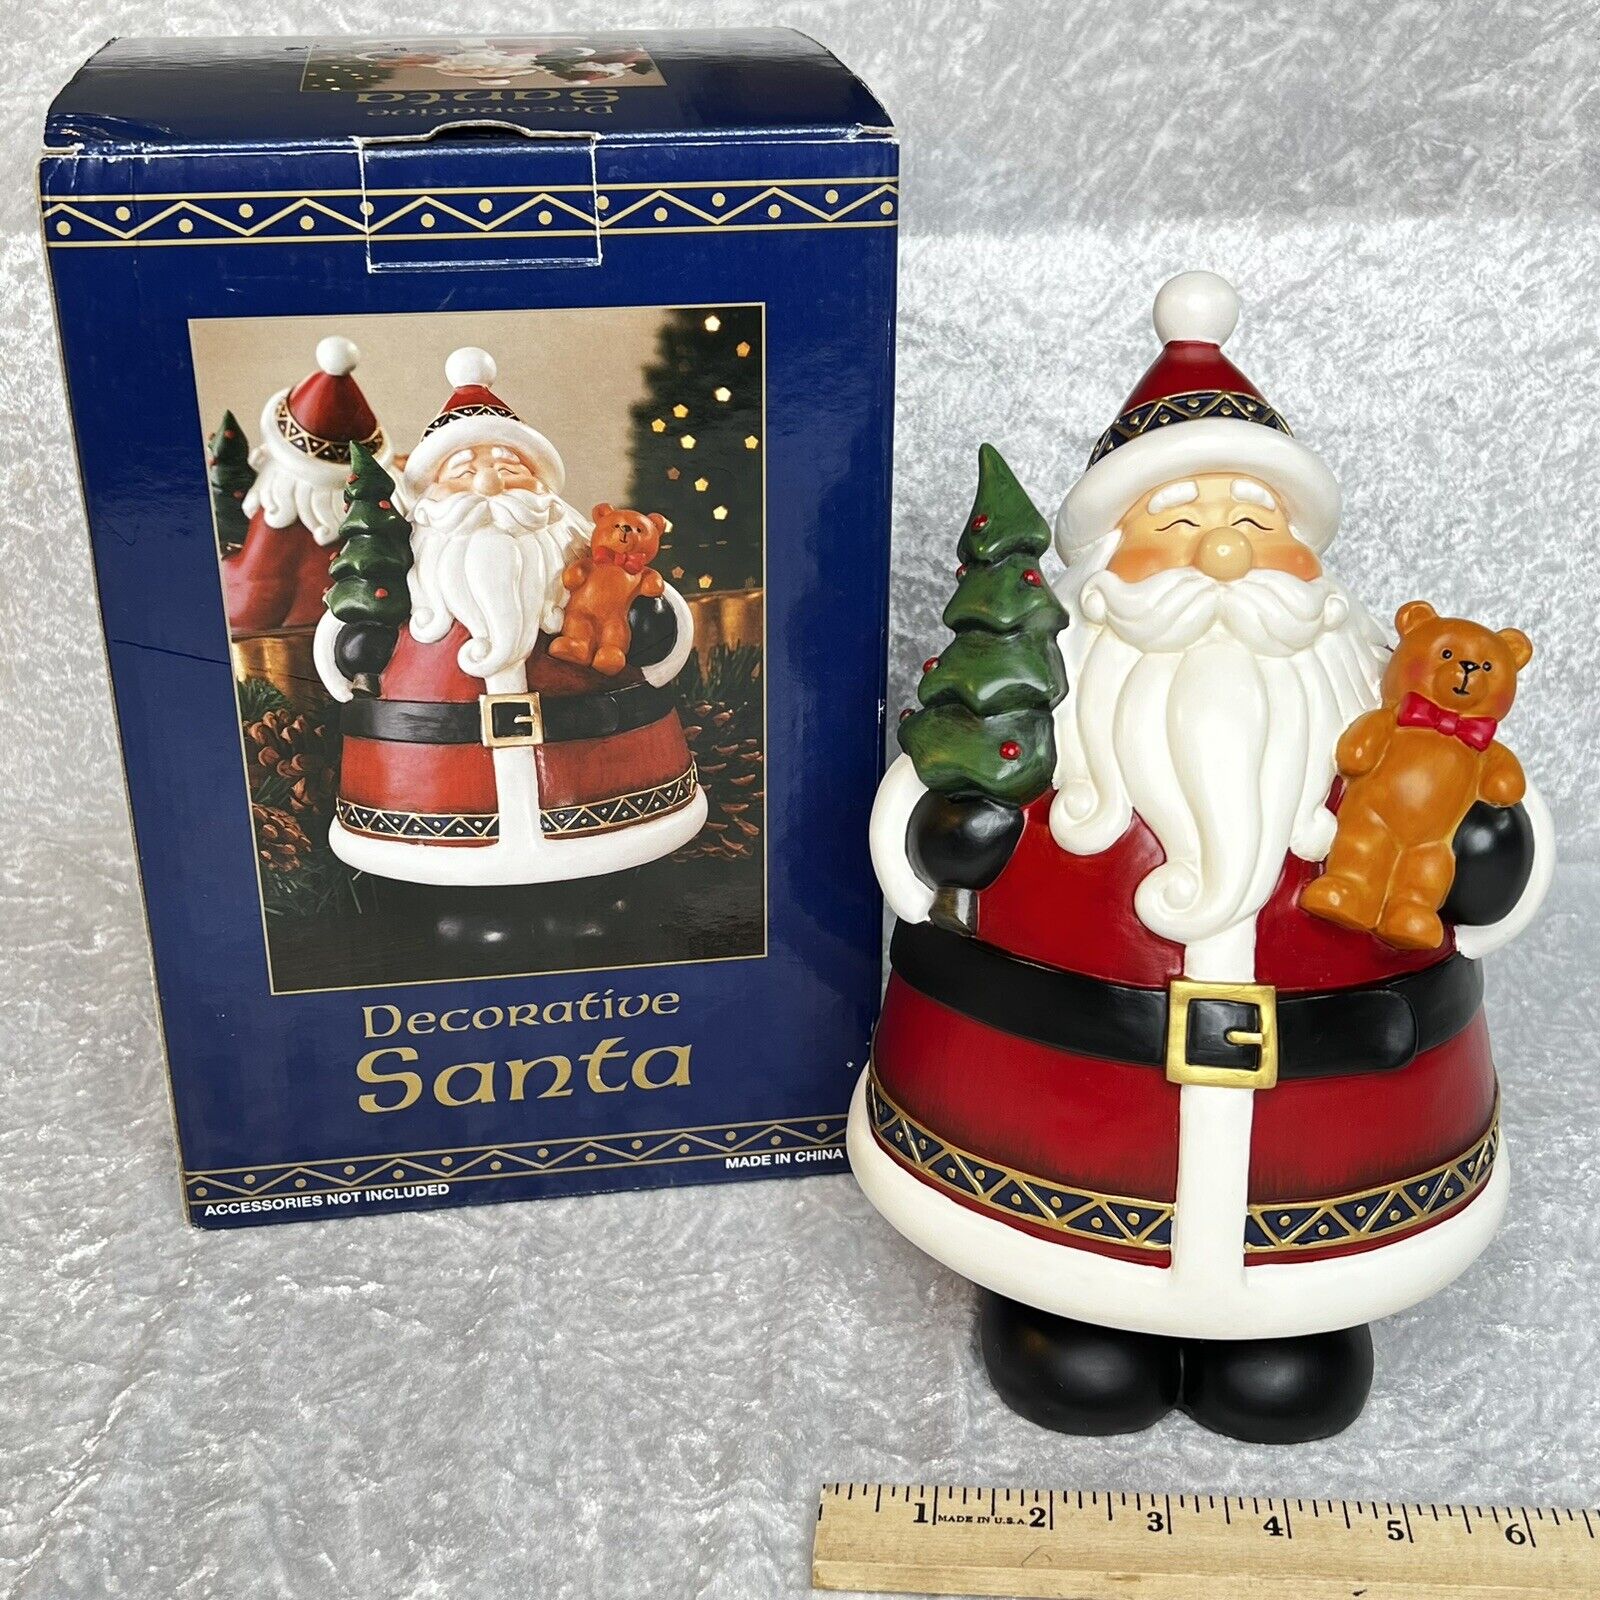 Costco Decorative Santa Holding Tree and Teddy Bear